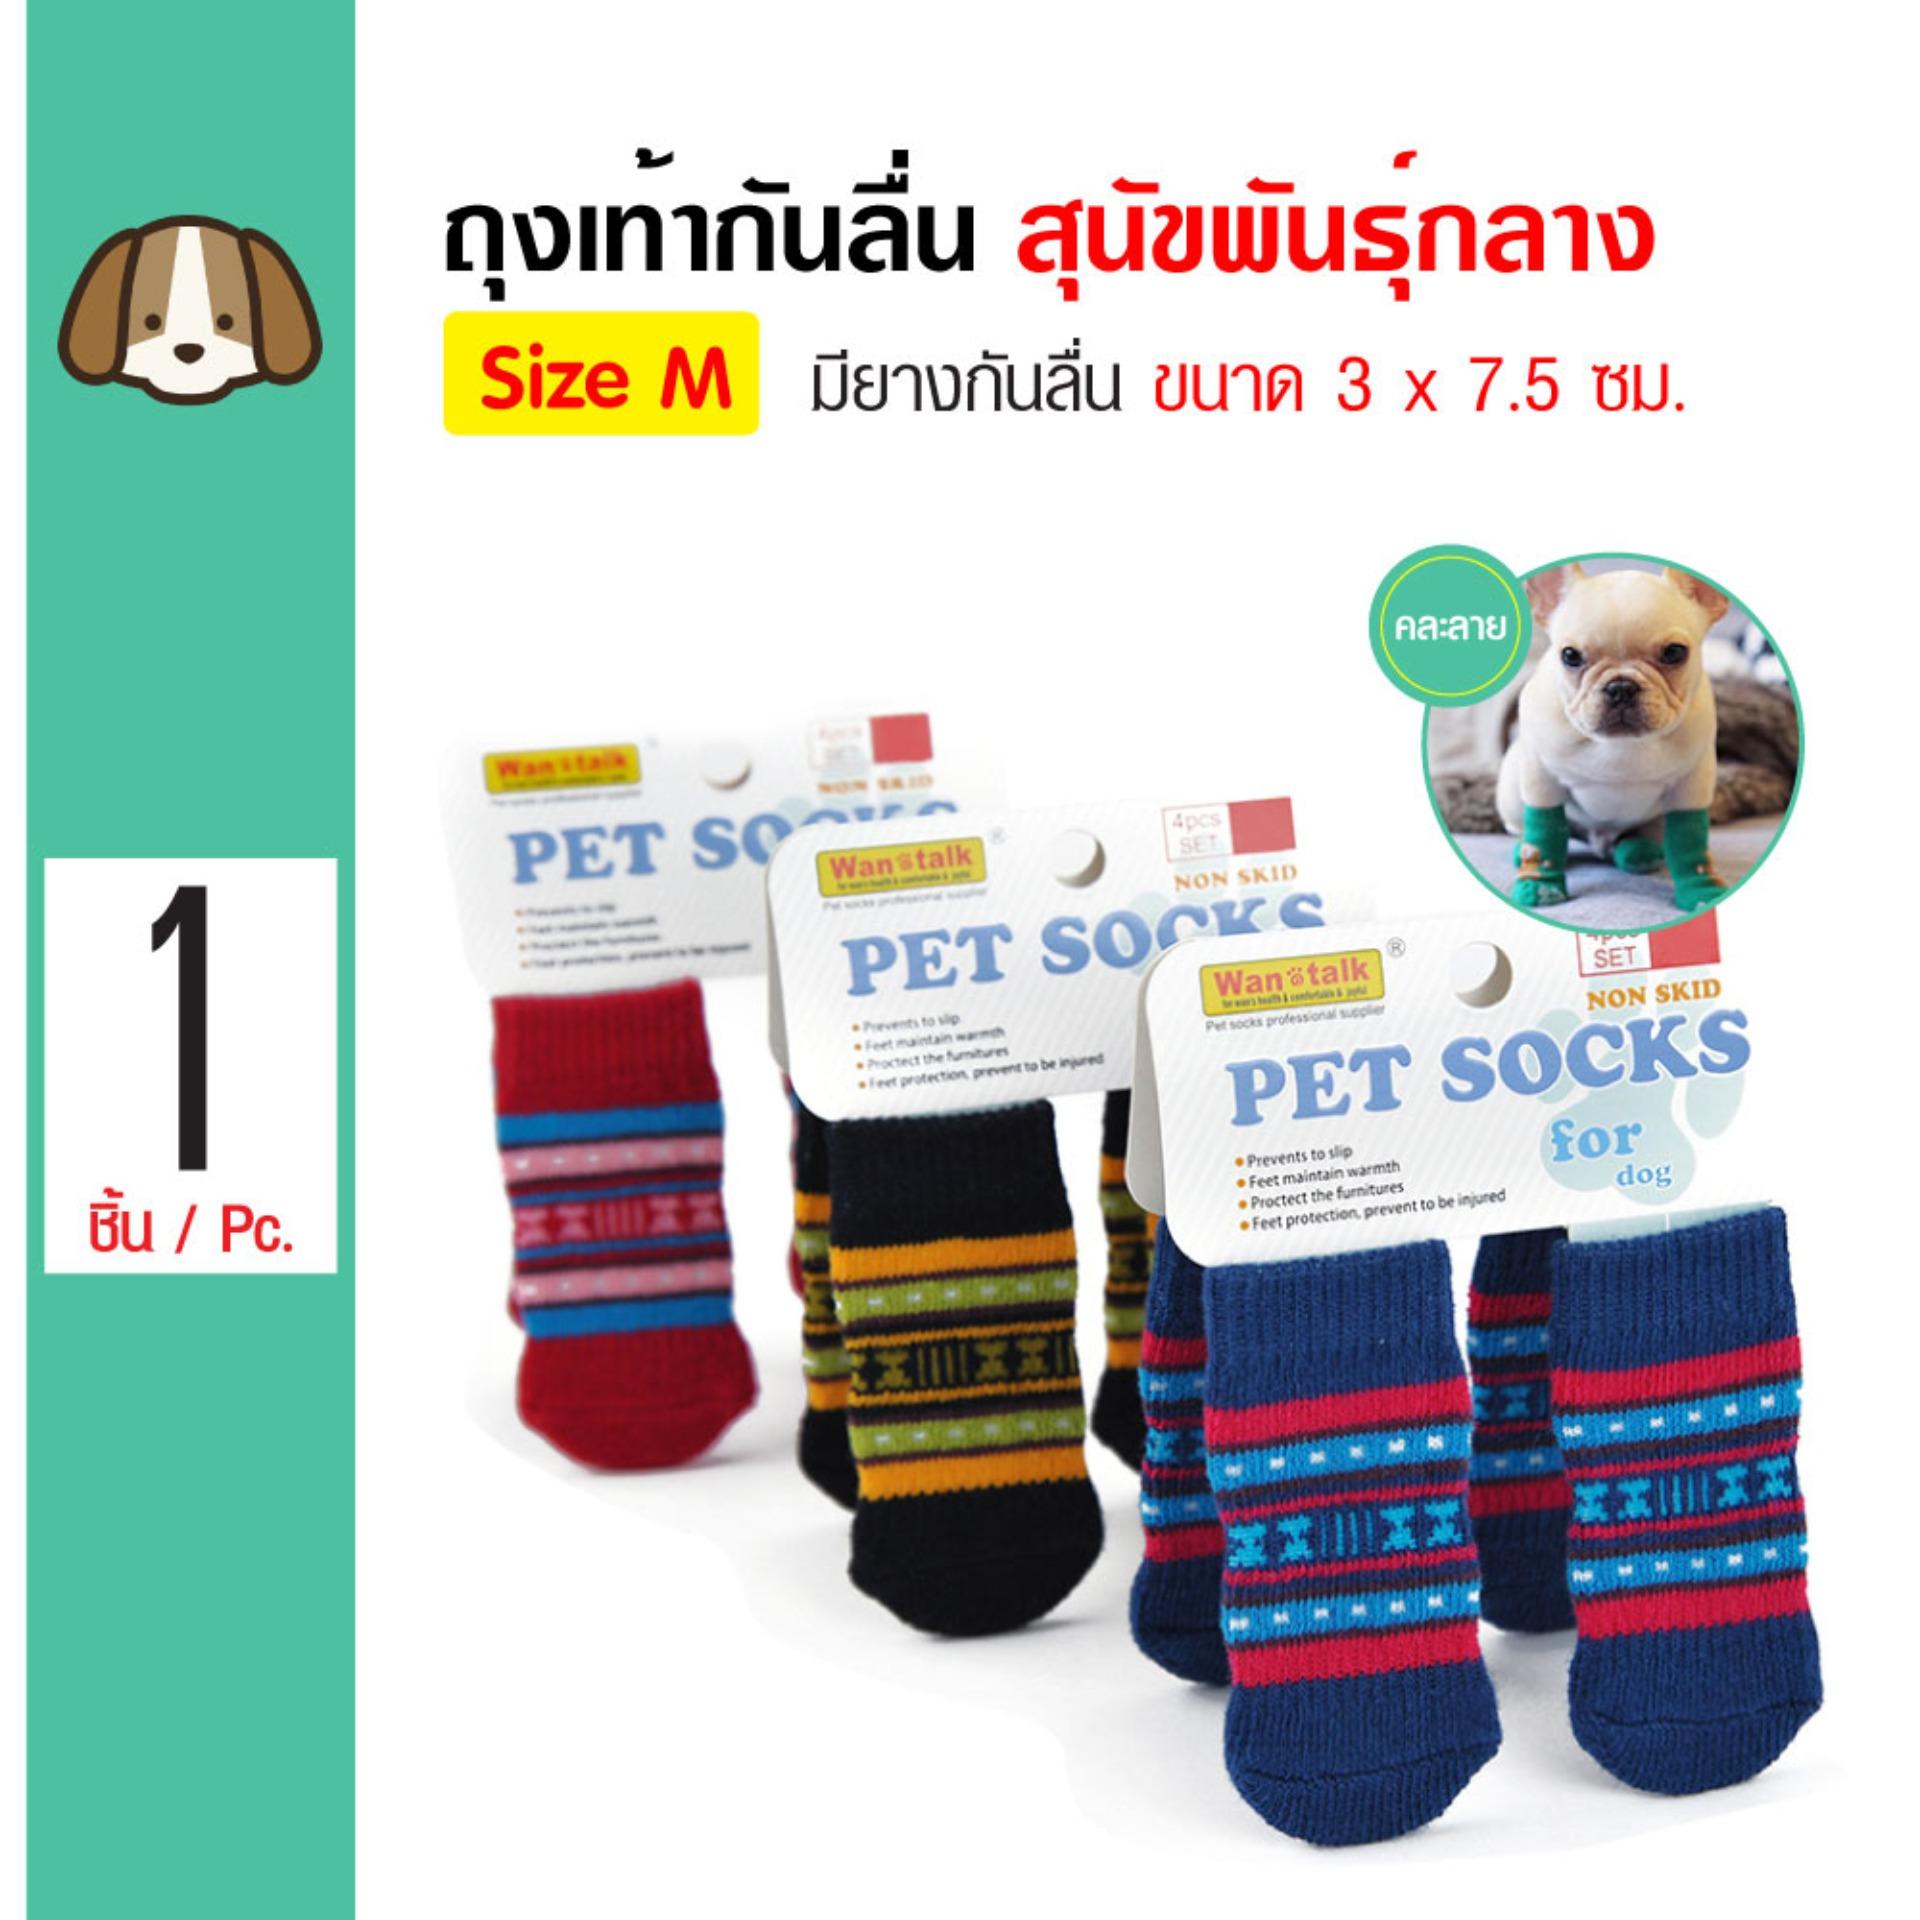 Dog Socks ถุงเท้าสุนัข พร้อมยางกันลื่น สำหรับสุนัขพันธุ์เล็ก-กลาง Size M ขนาด 3x7.5 ซม. (4 ข้าง/ แพ็ค)